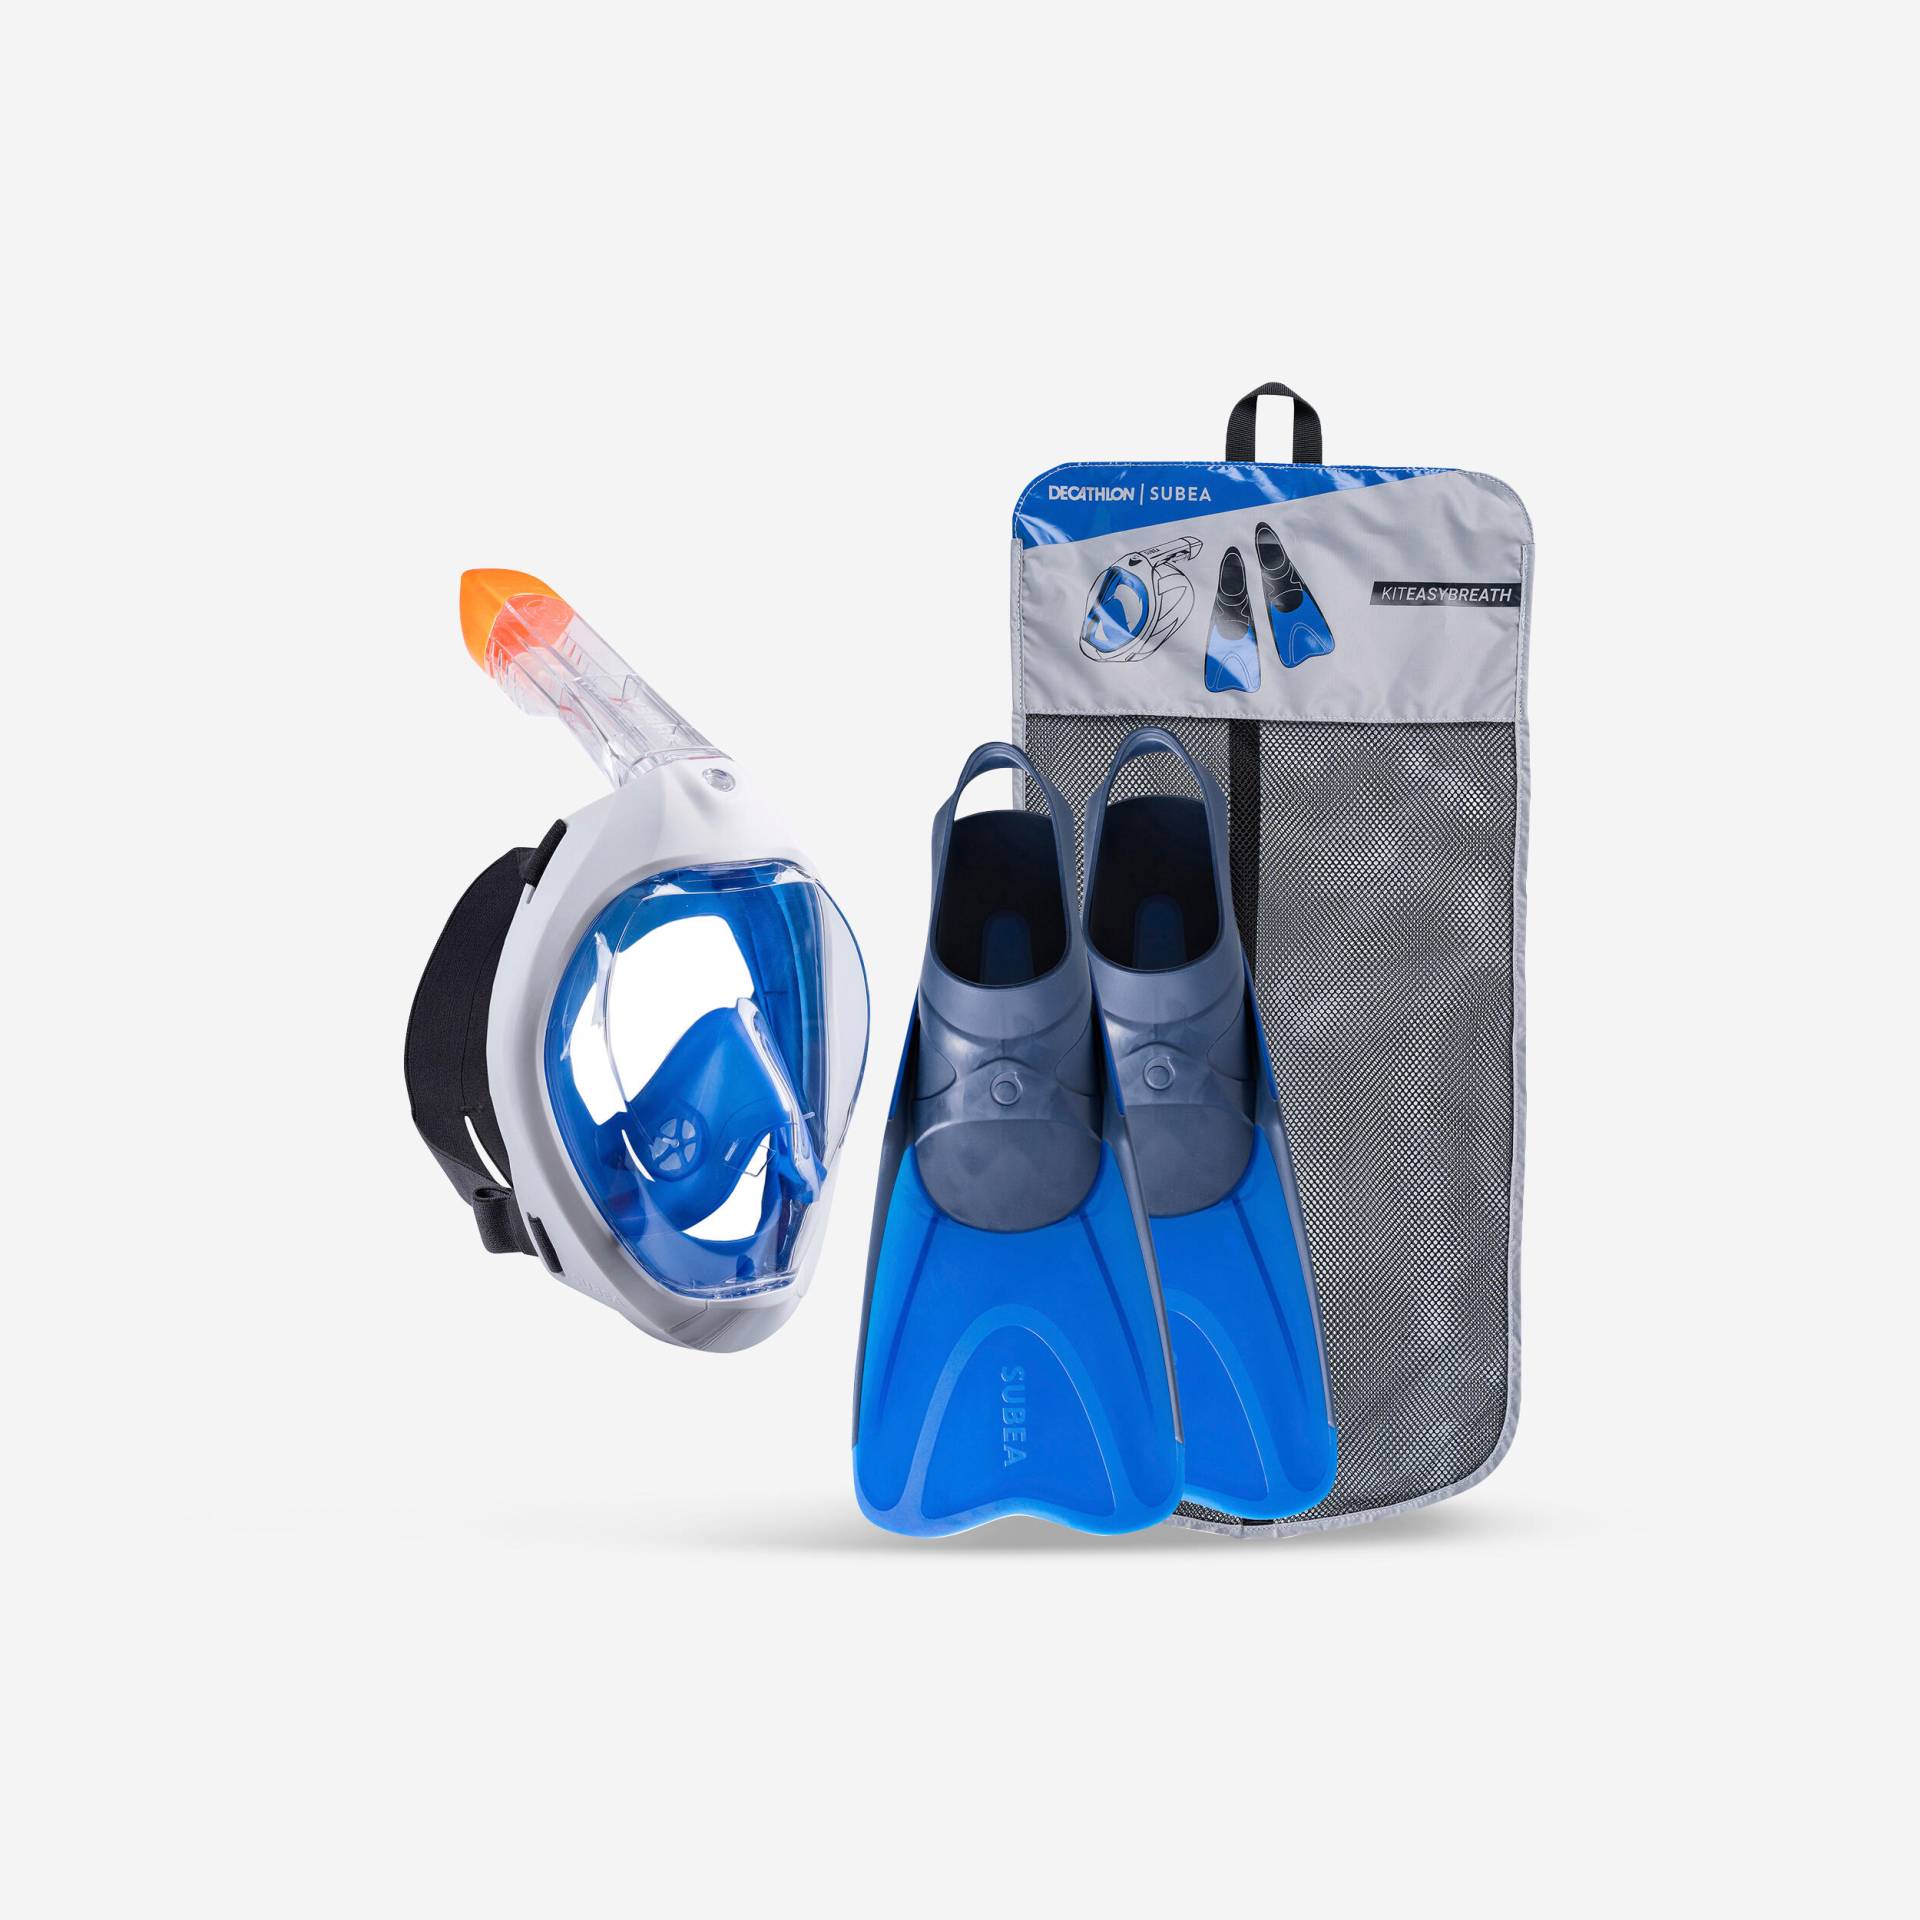 Schnorchel-Set Erwachsene mit Maske und Flossen - Easybreath 500 blau von SUBEA